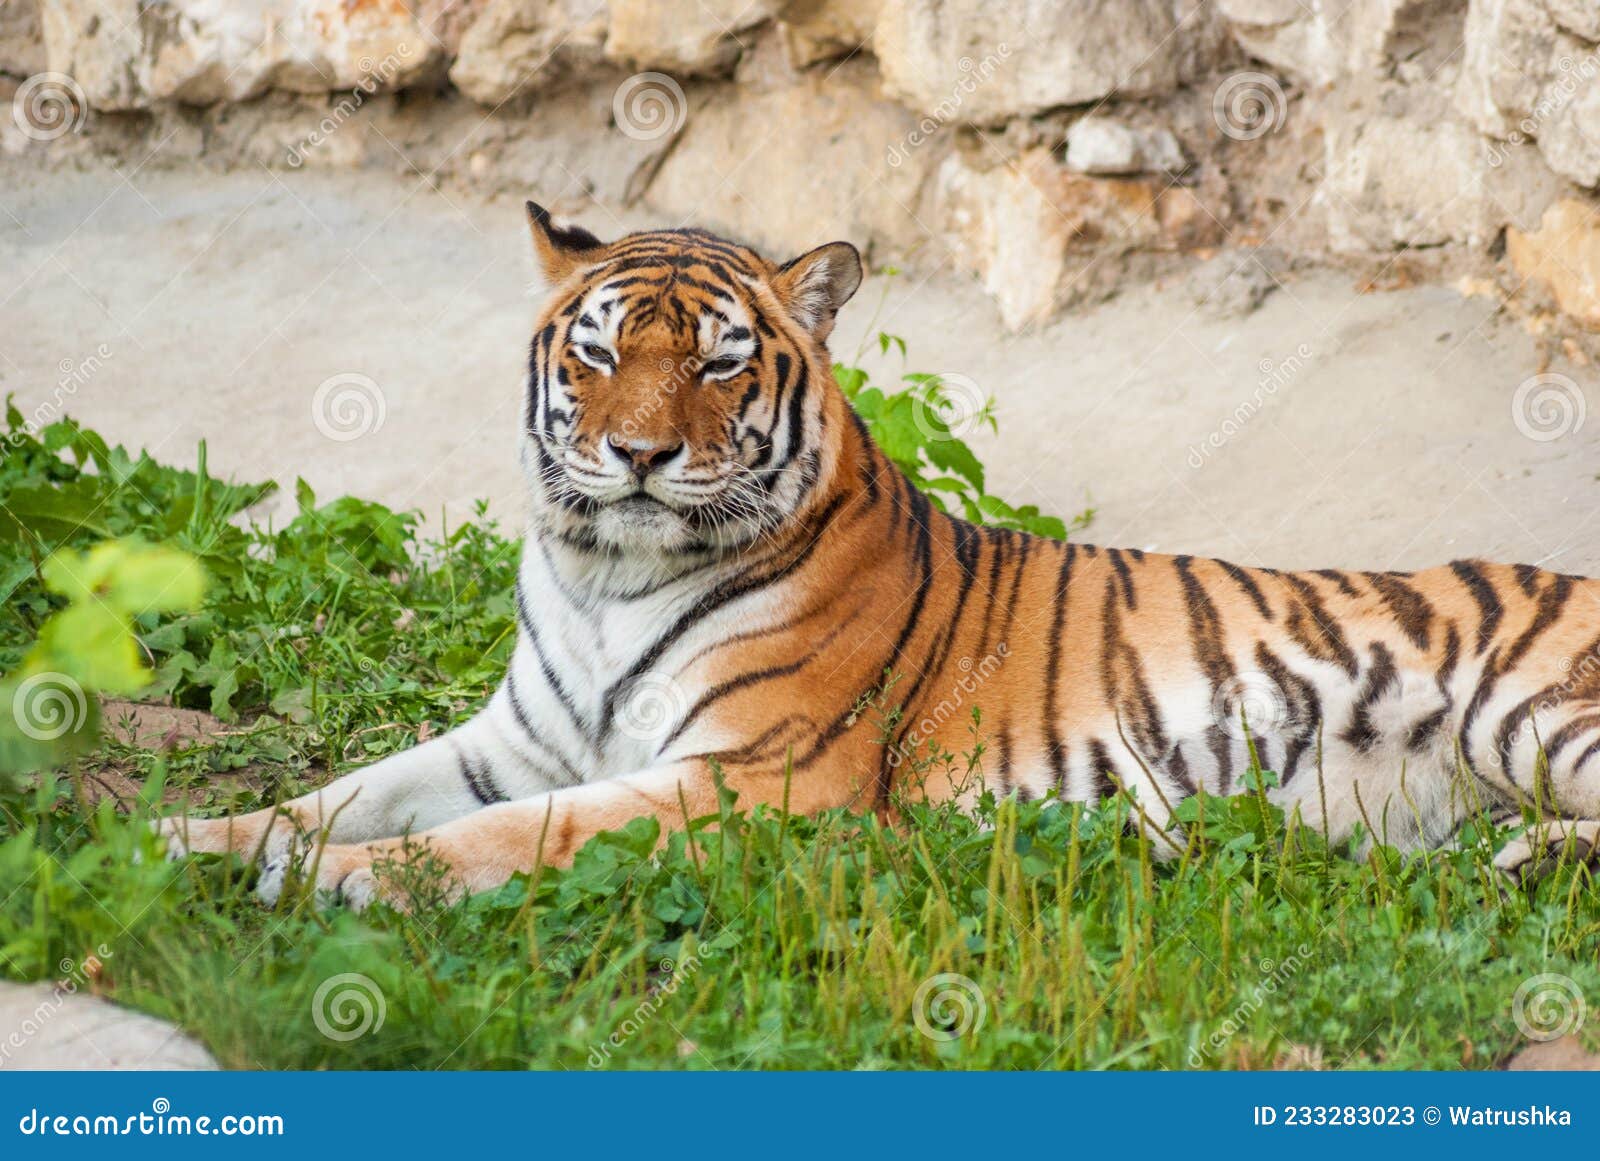 Le chat sauvage, un gros chat tigré